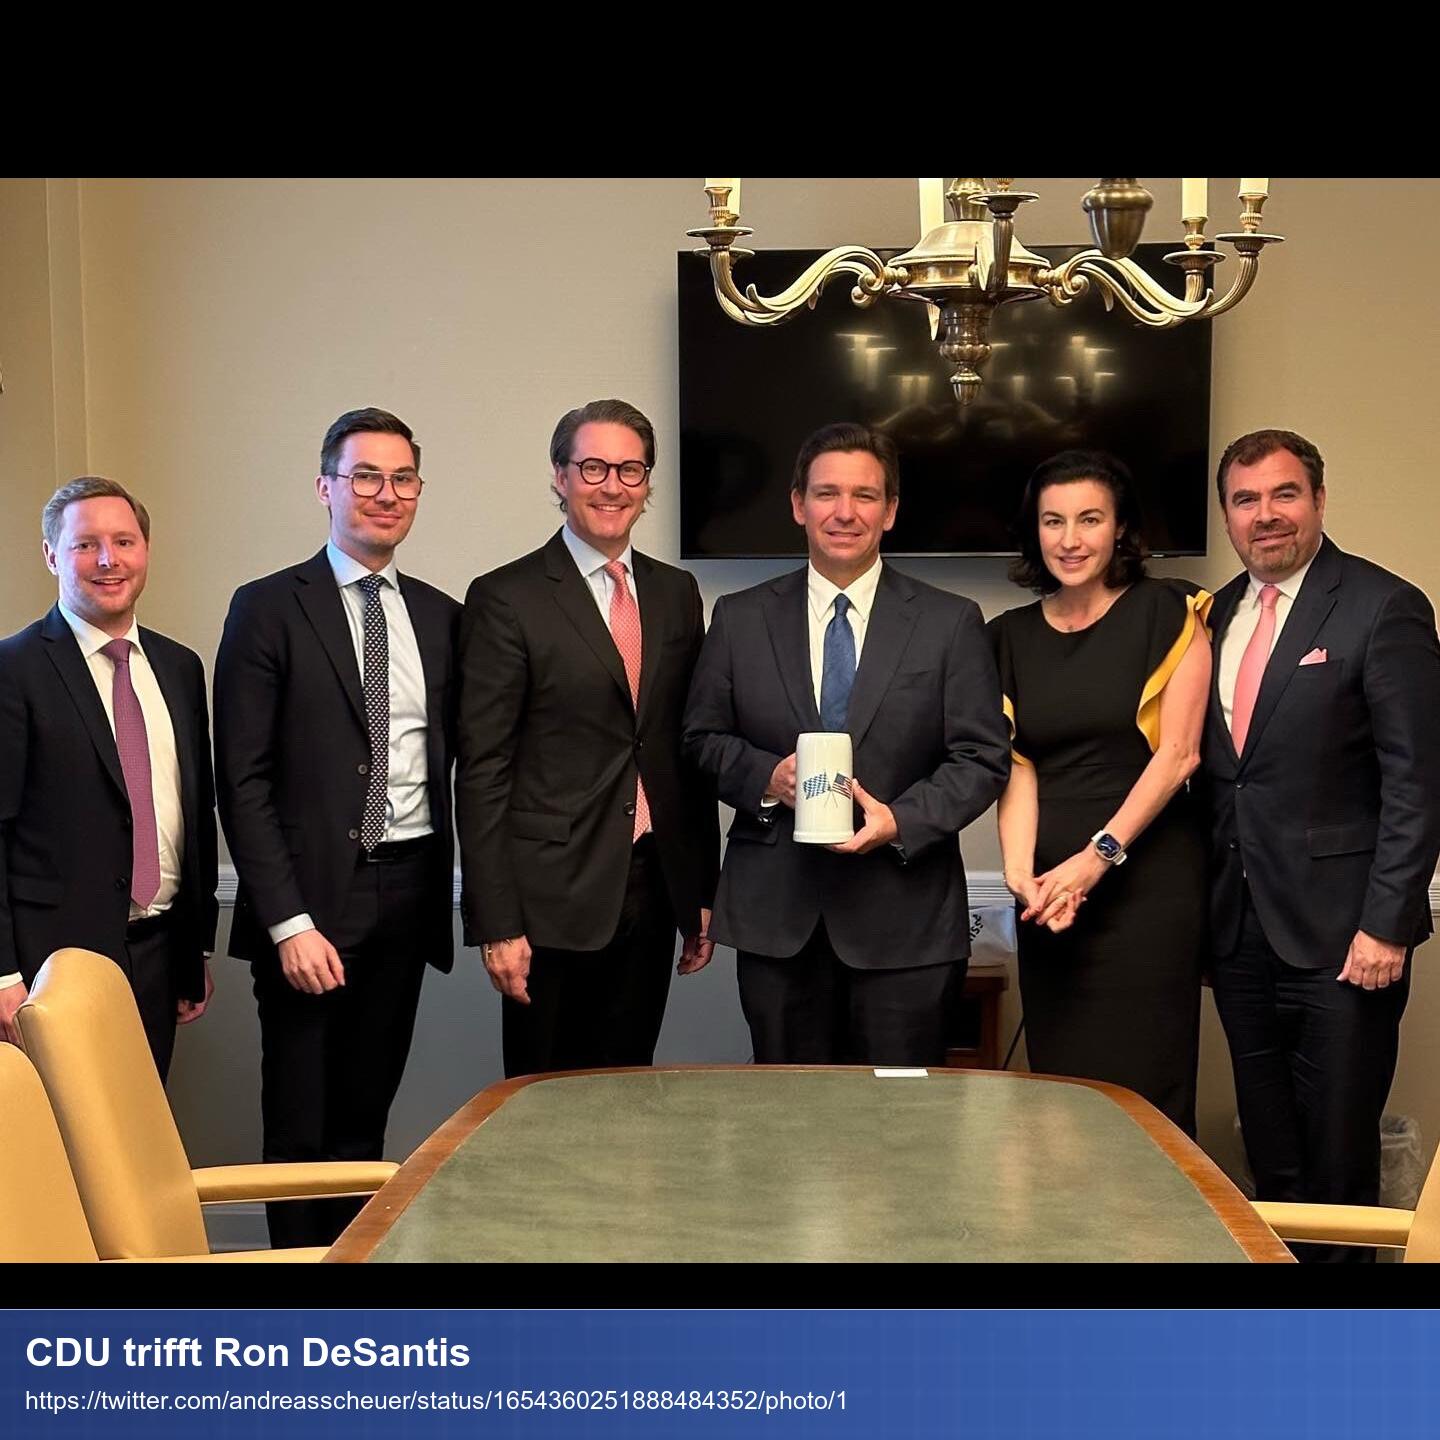 Scheuer und andere CDU Politiker stehen mit Ron DeSantis hinter einem Tisch, schauen in die lächelnd in die Kamera und Desantis hält einen kleinen Bierkrug in die Kamera.